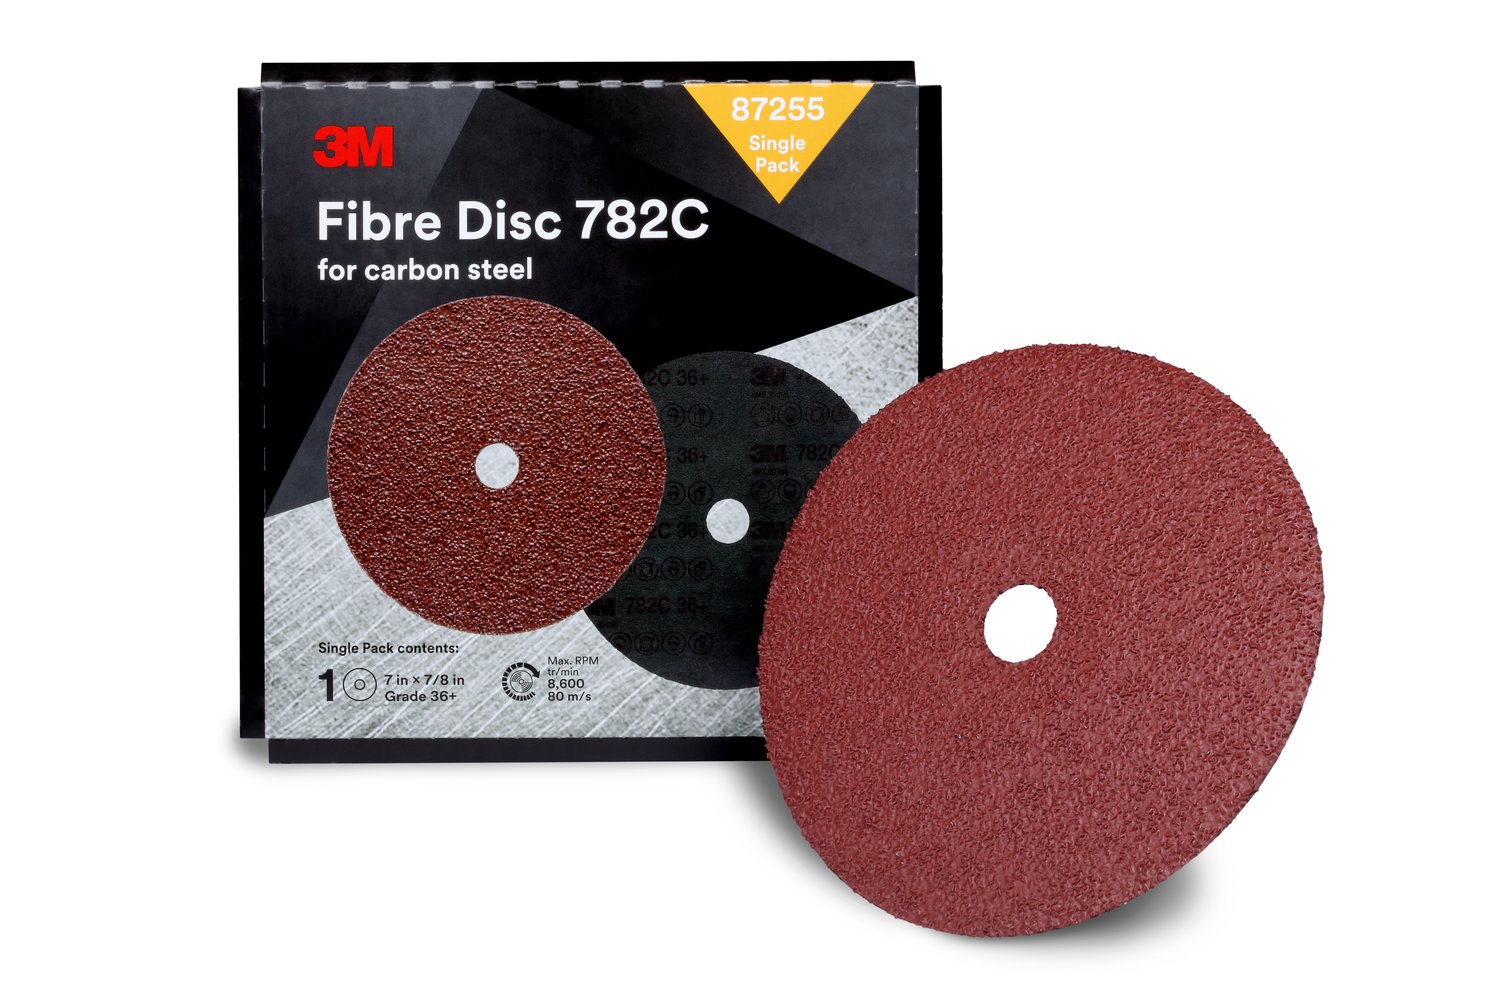 7100109880 - 3M Fibre Disc 782C, 7 in x 7/8 in, 36+, Trial Pack, 10 ea/Case